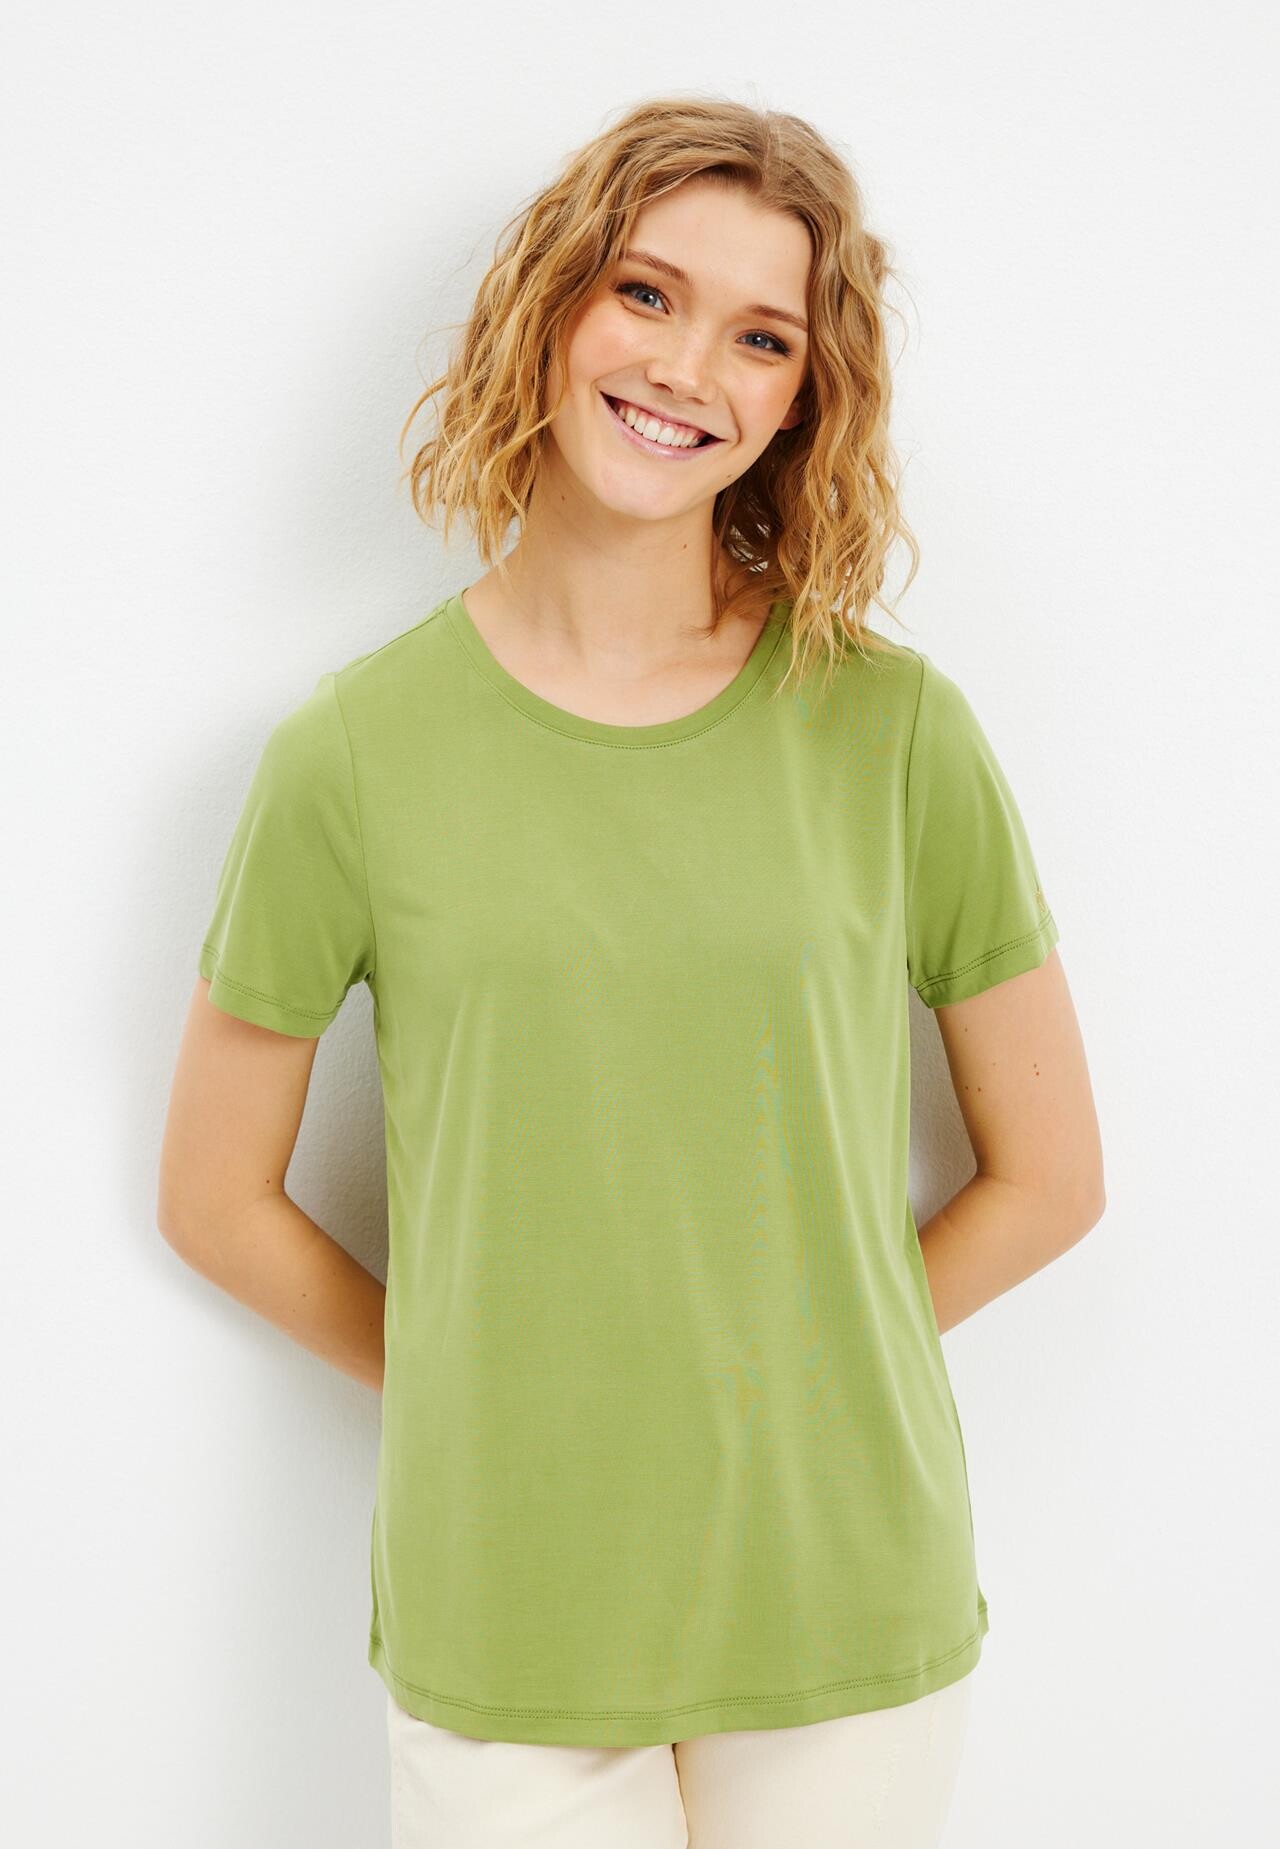 17: In Front Nina T-shirt, Farve: Apple Grøn, Størrelse: XXL, Dame